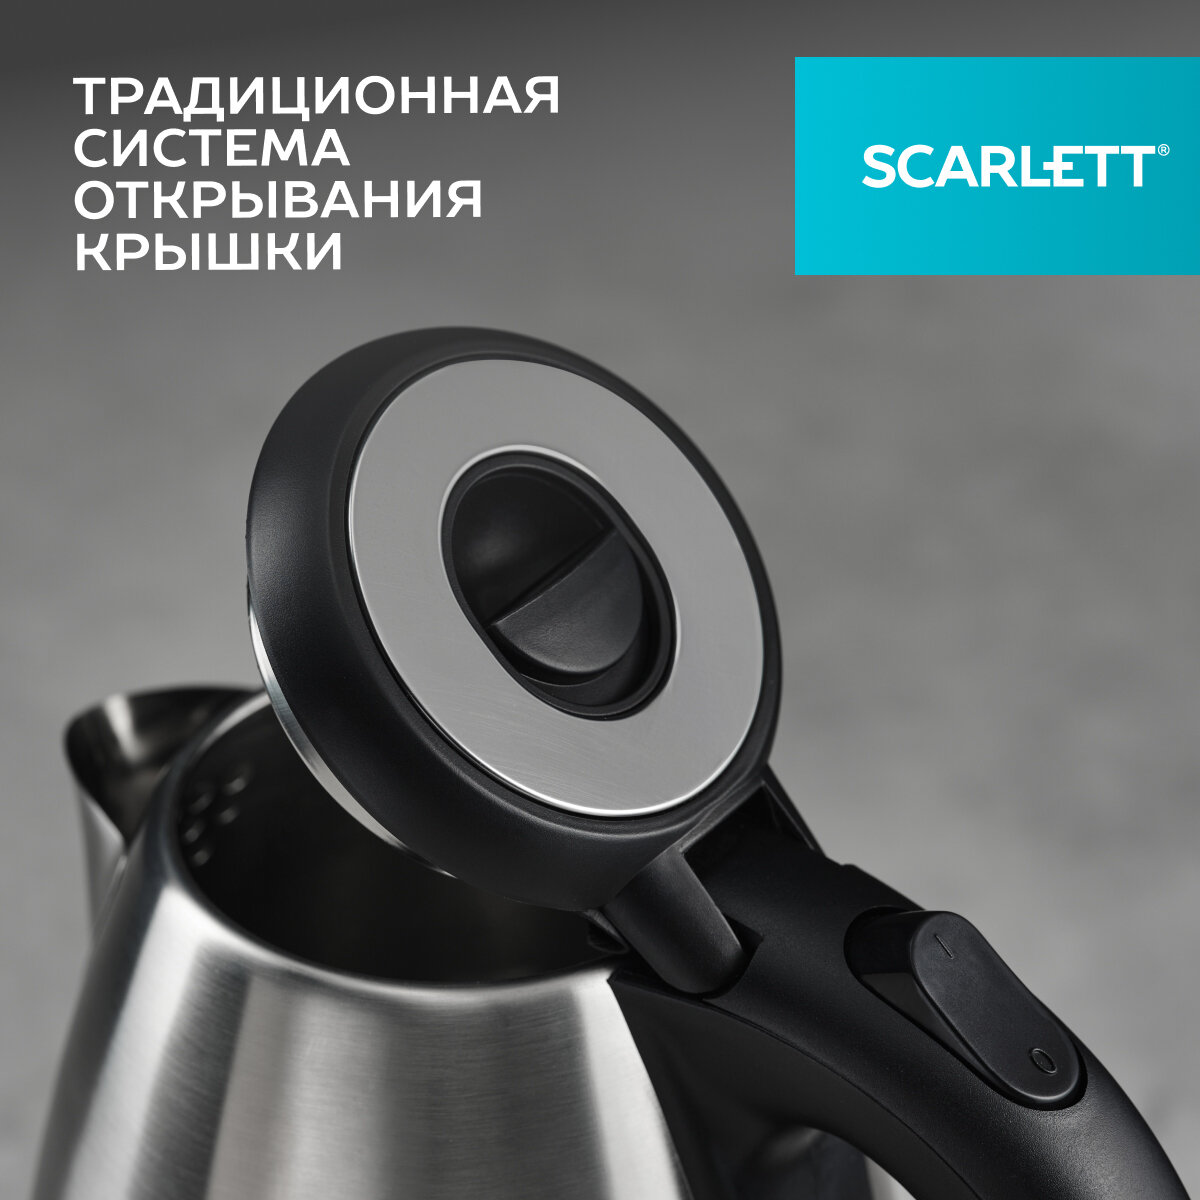 Чайник sc-ek21s51 scarlett